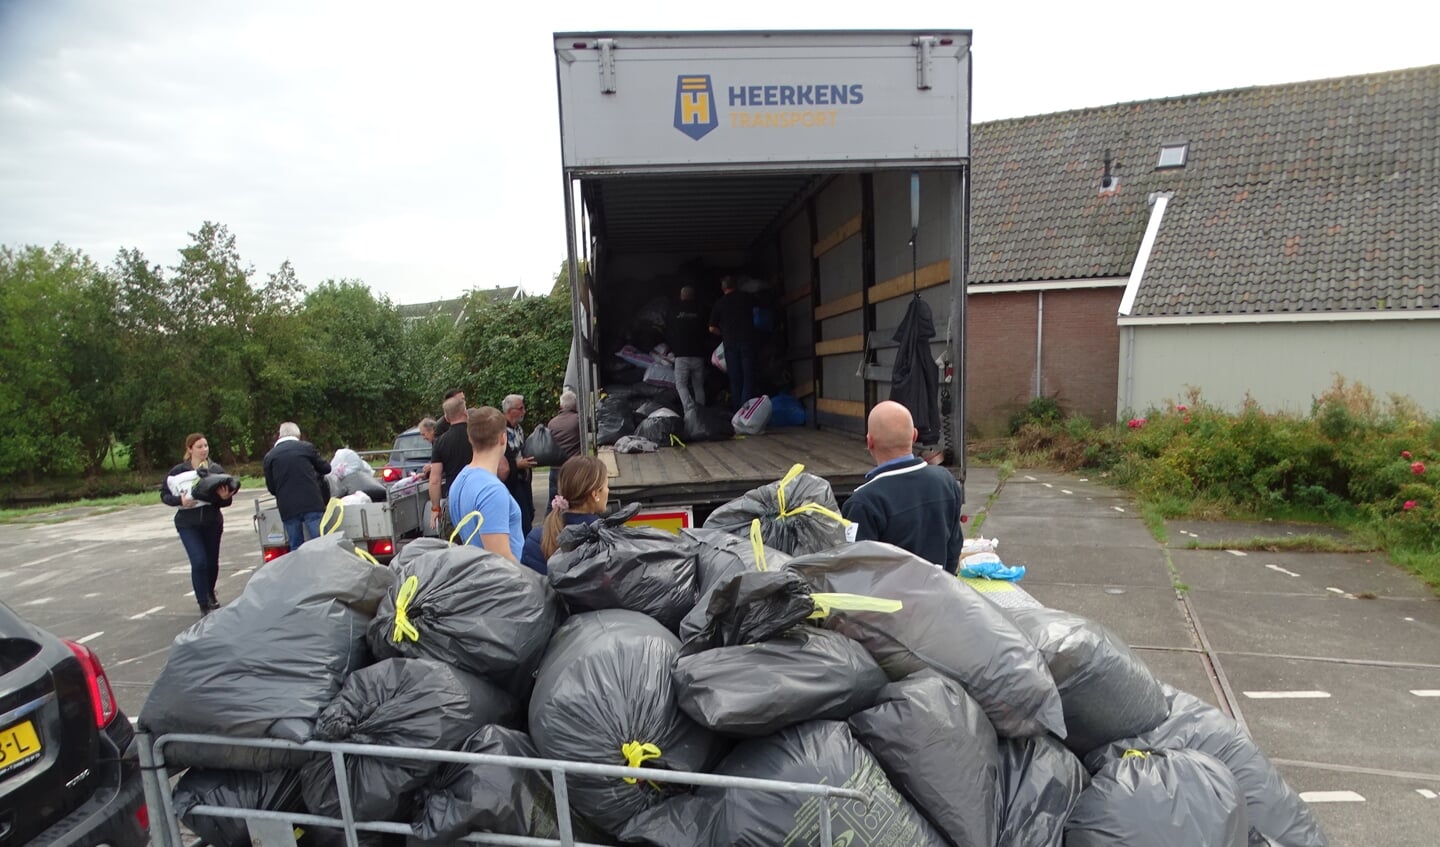 Zakken vol kleding gaan in de vrachtwagen voor de actie 'Mensen in Nood'.